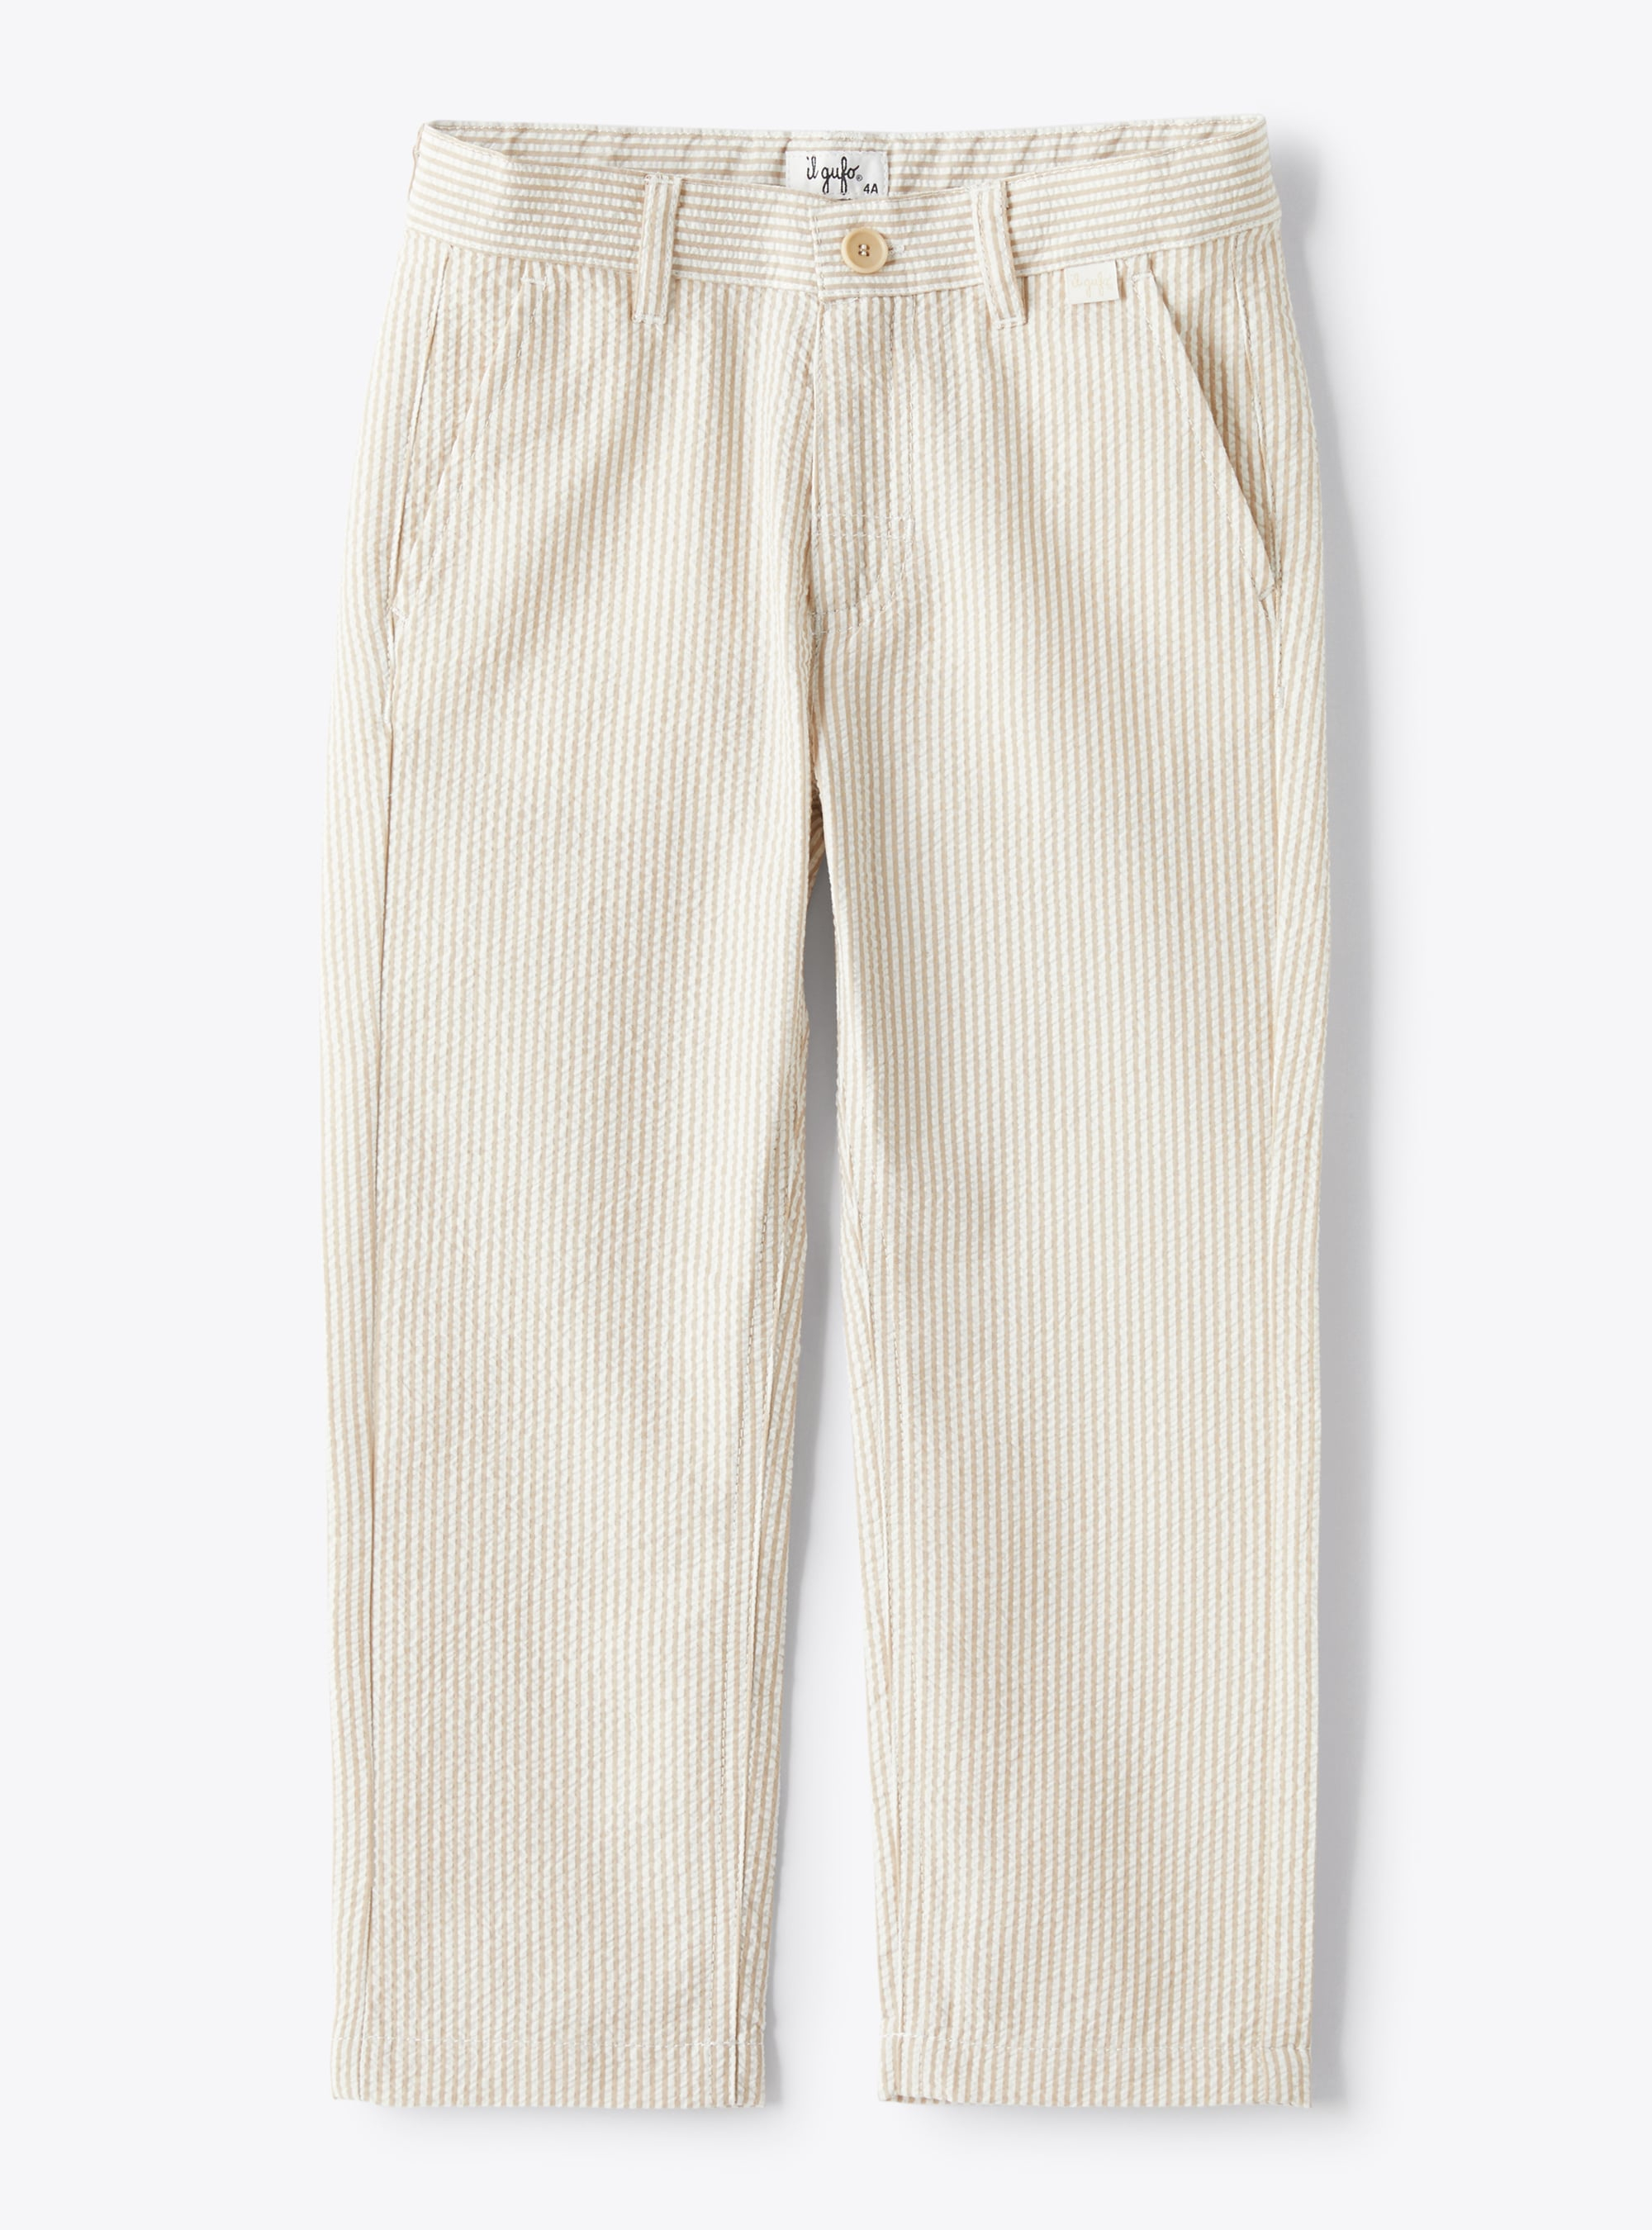 Pantalon en seersucker à rayures beiges et blanches - Pantalons - Il Gufo